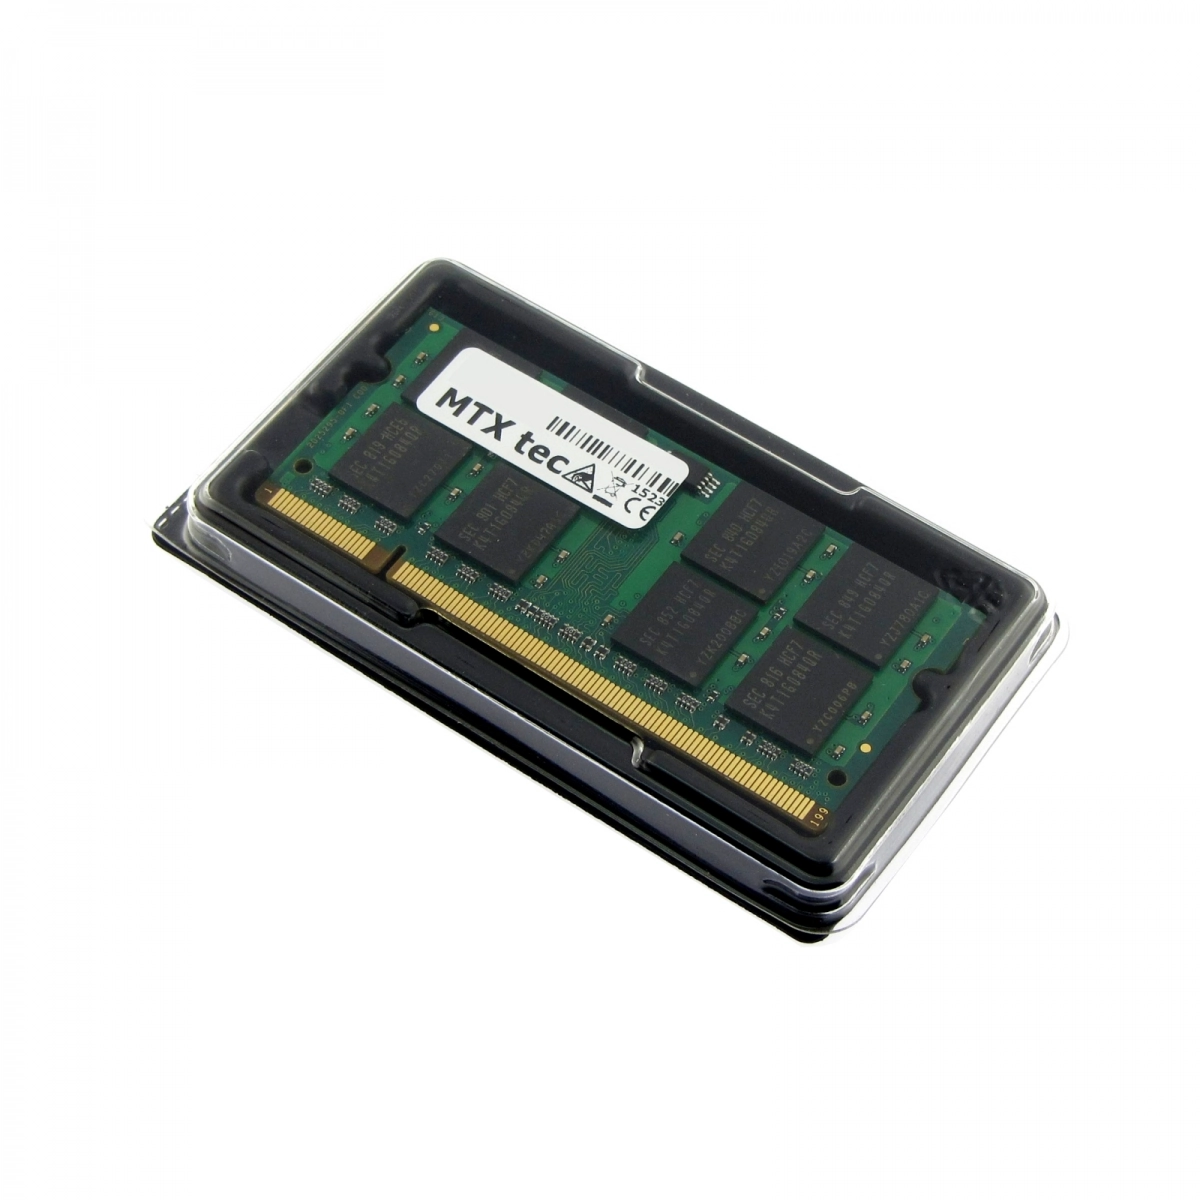 MTXtec Arbeitsspeicher 2 GB RAM für ACER Aspire 1410 (11.6)